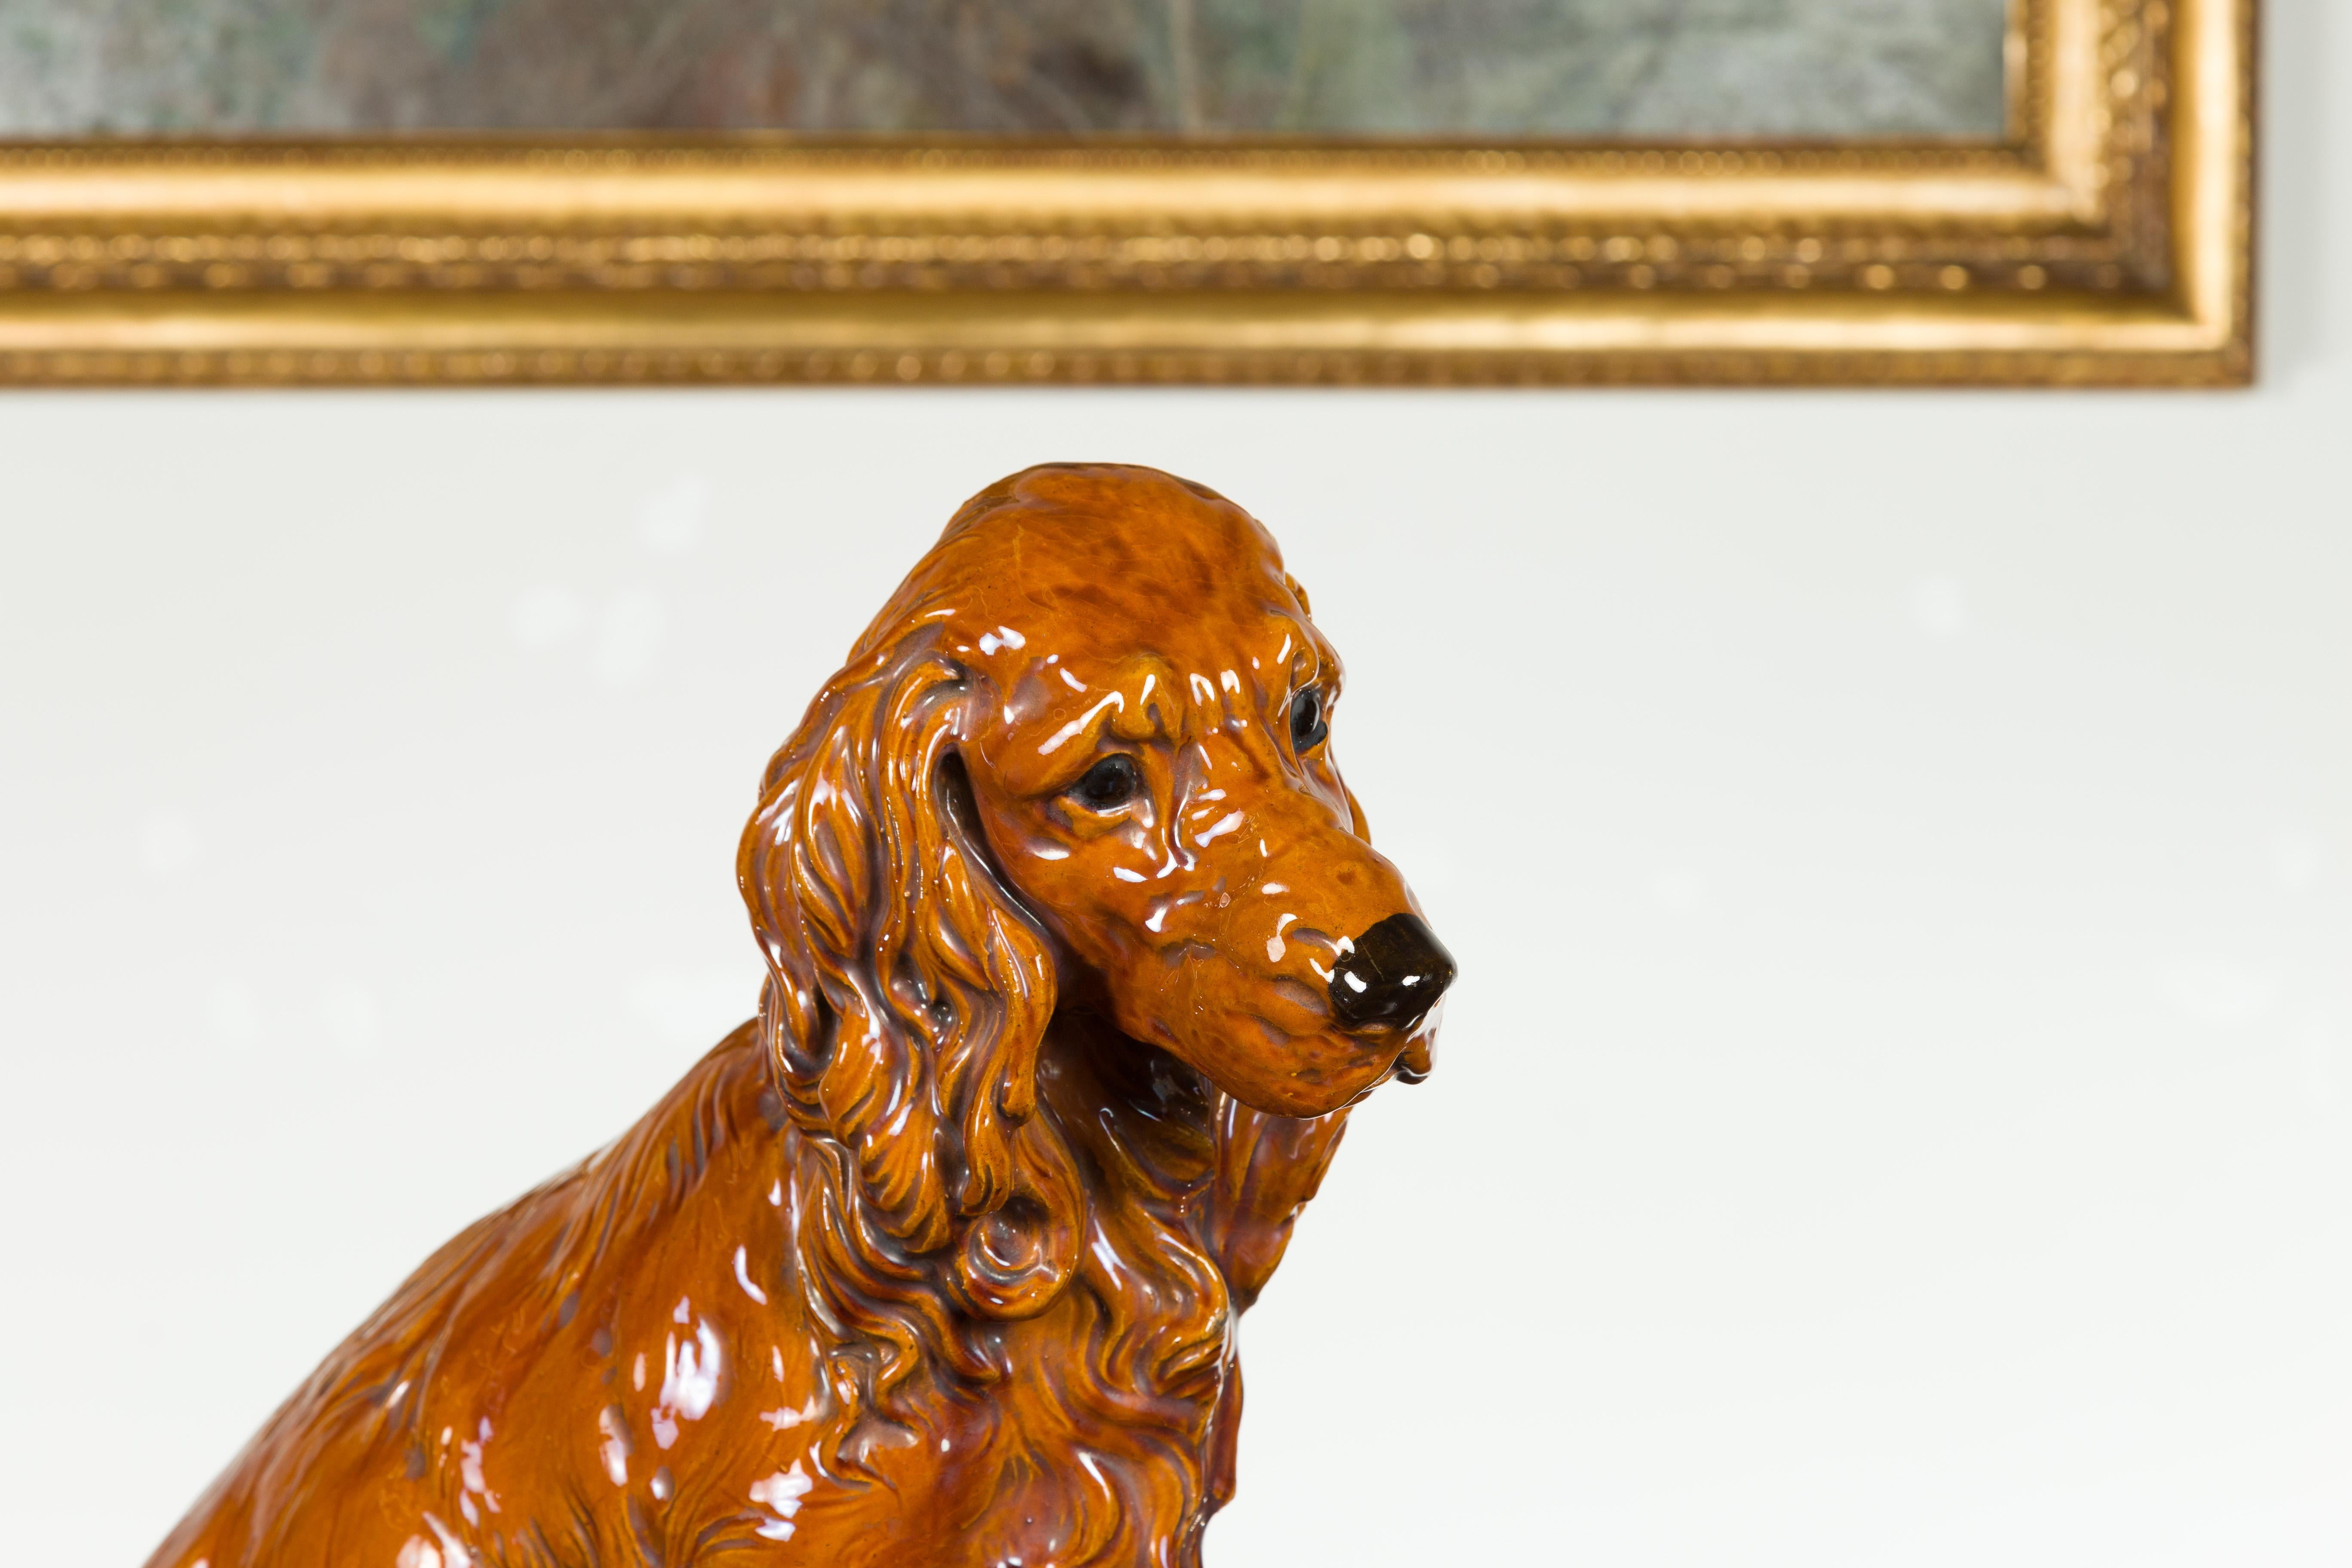 Vintage Glazed Terracotta Dog Sculpture Depicting a Russet Cocker Spaniel 1